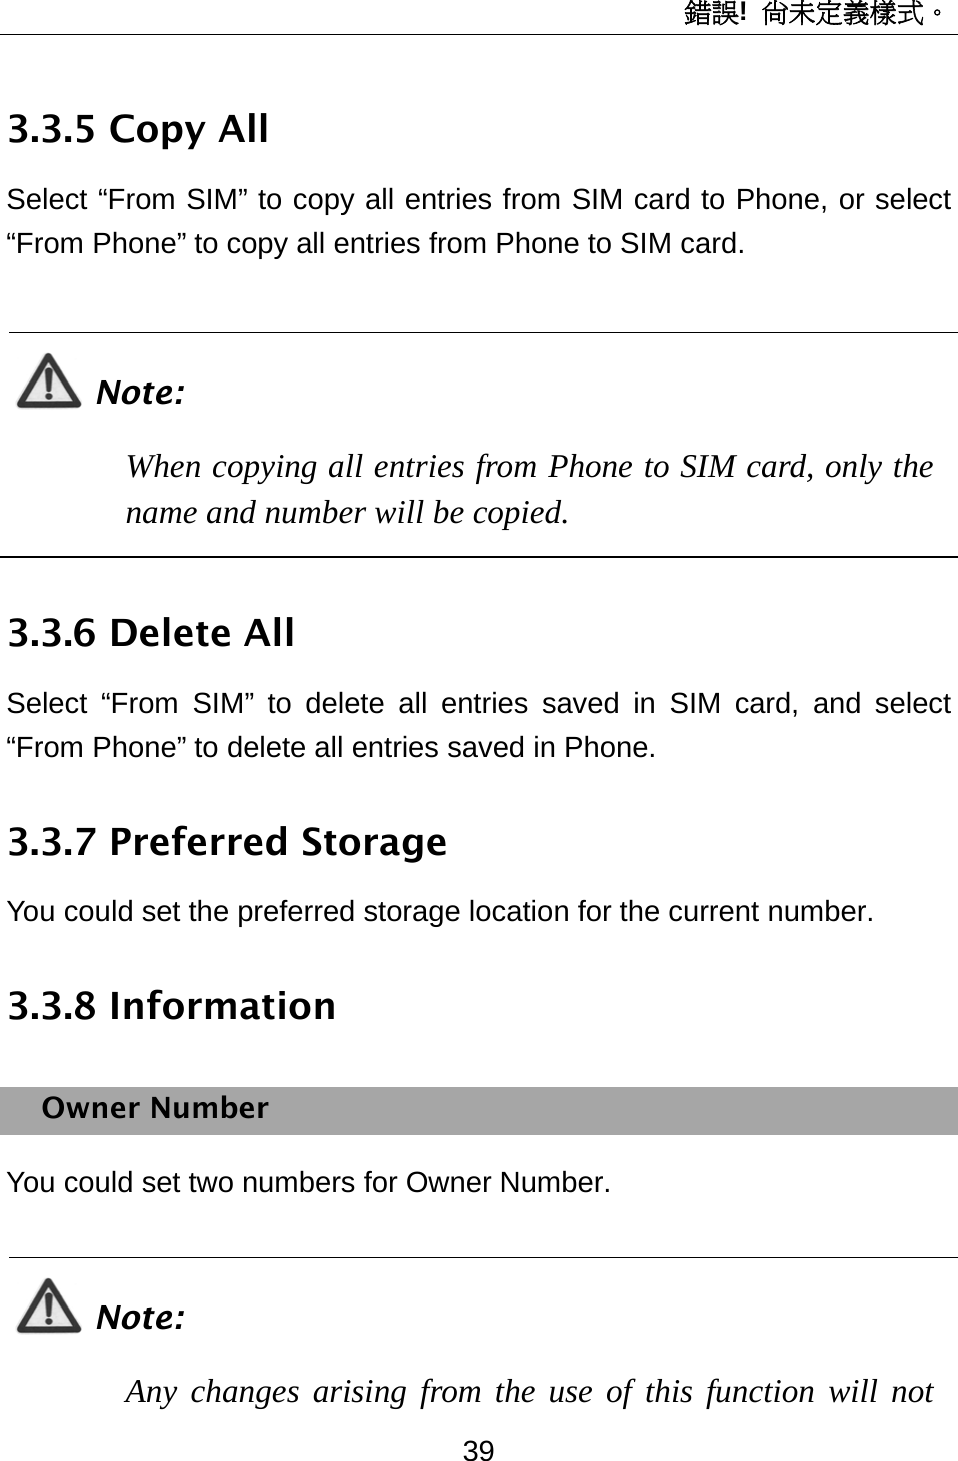 錯誤!  尚未定義樣式。 39 3.3.5 Copy All Select “From SIM” to copy all entries from SIM card to Phone, or select “From Phone” to copy all entries from Phone to SIM card.  Note: When copying all entries from Phone to SIM card, only the name and number will be copied.  3.3.6 Delete All Select “From SIM” to delete all entries saved in SIM card, and select “From Phone” to delete all entries saved in Phone. 3.3.7 Preferred Storage You could set the preferred storage location for the current number. 3.3.8 Information Owner Number You could set two numbers for Owner Number.  Note: Any changes arising from the use of this function will not 